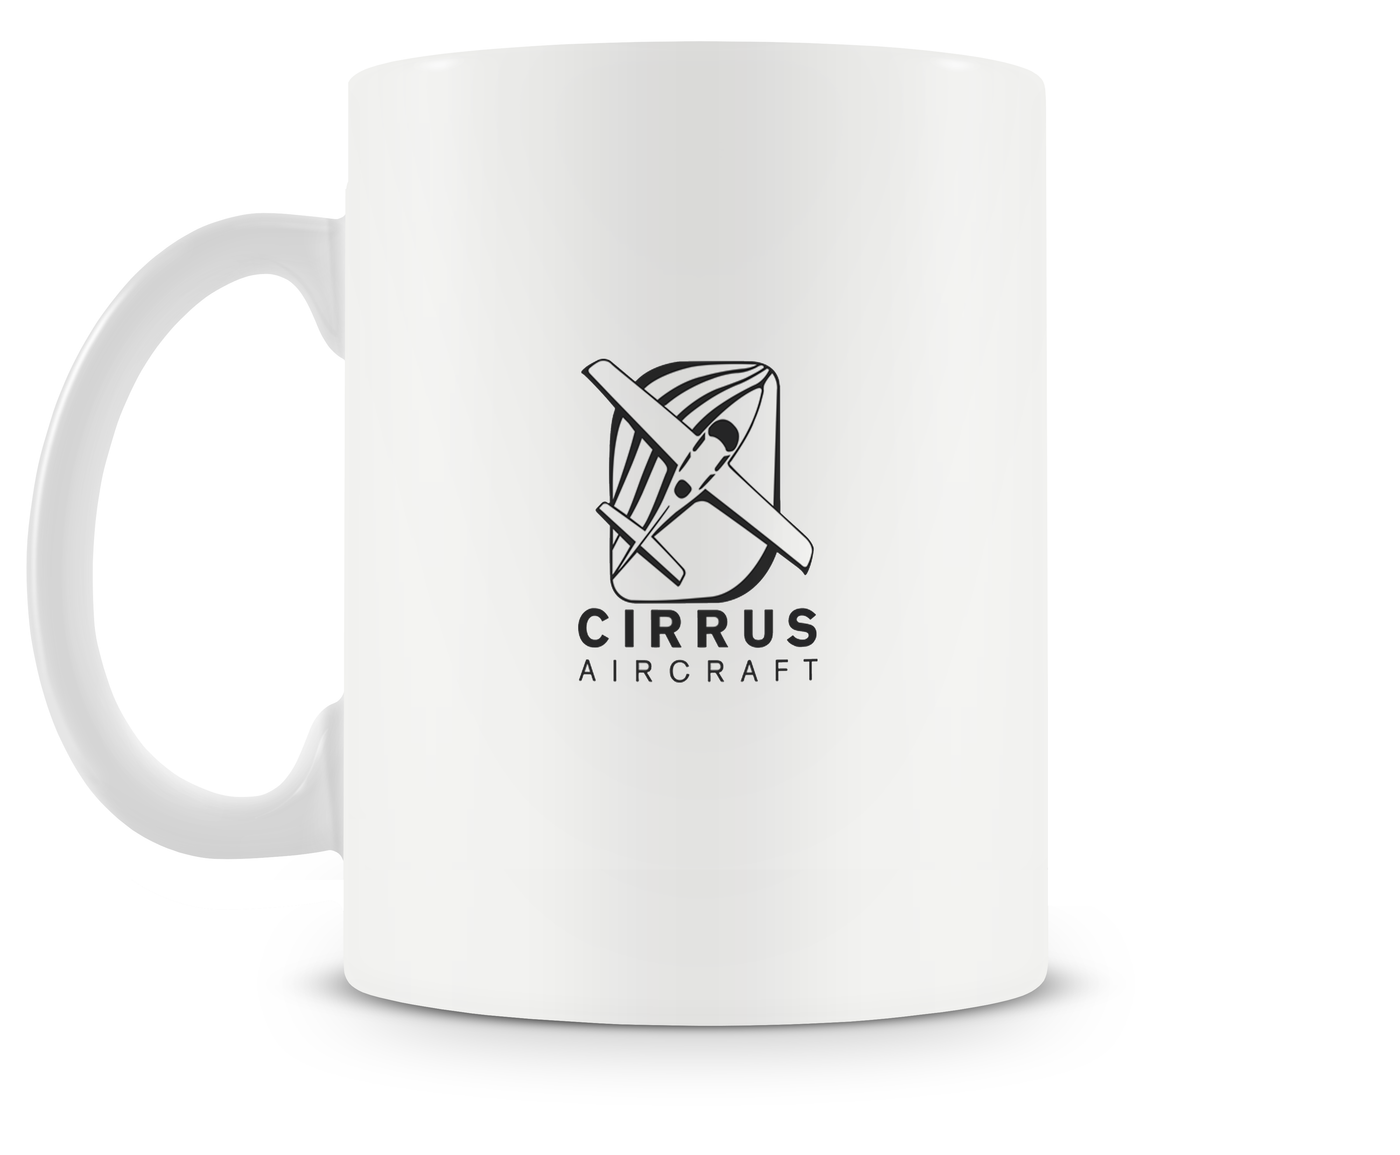 Cirrus SR-22 Mug - Aircraft Mugs